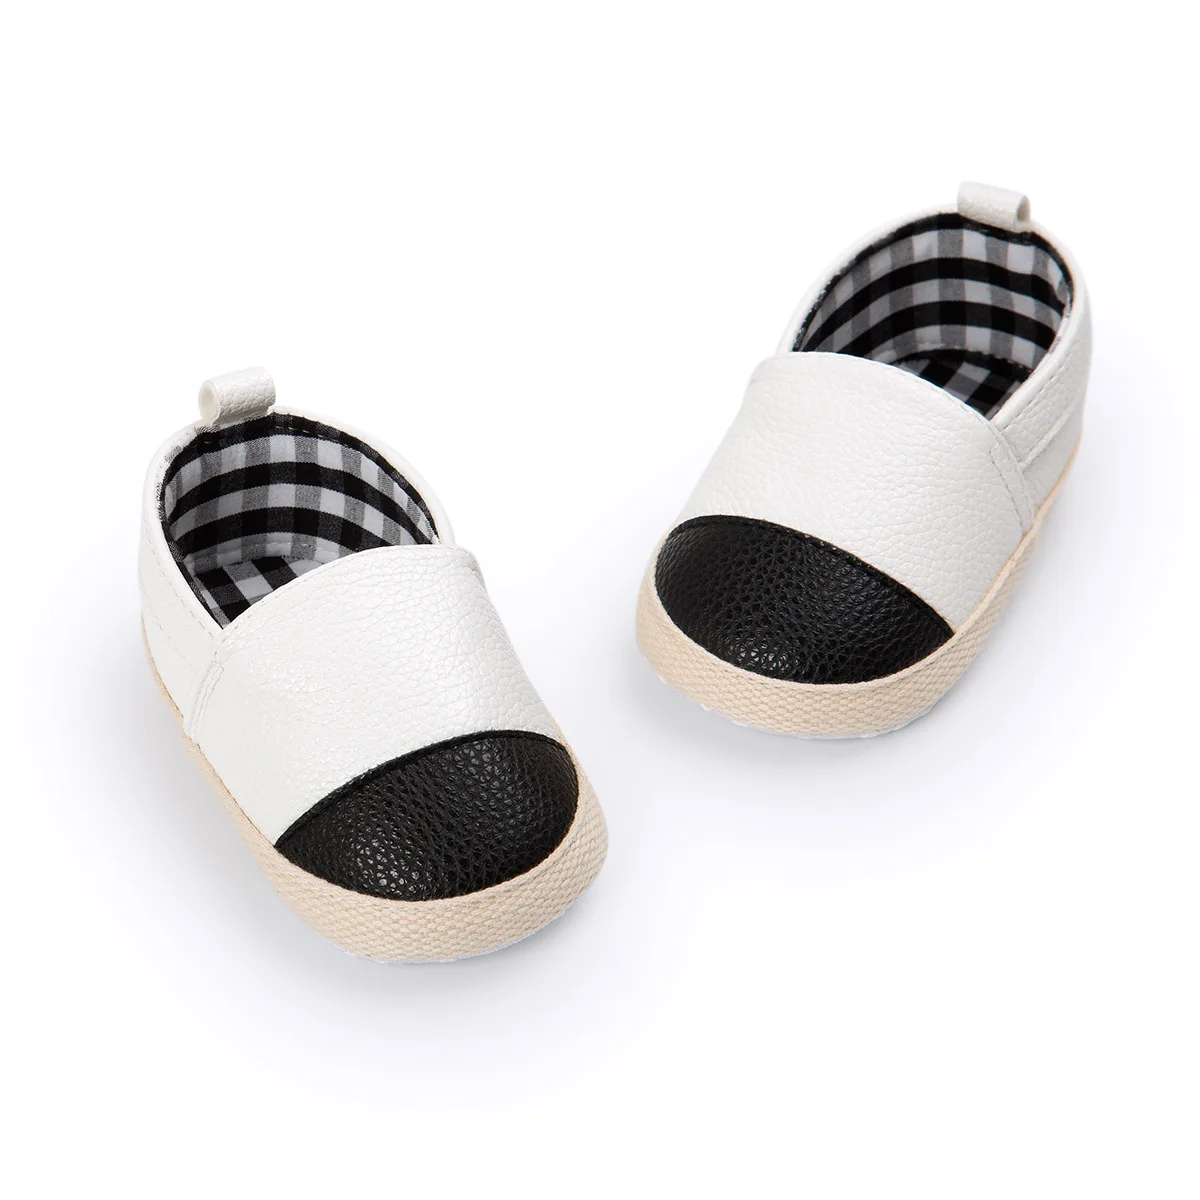 Обувь для новорожденного мальчика девочки Младенческая Детская кроватка обувь PU блестящие черные квадраты хлопок противоскользящая подошва новорожденный малыш первые ходунки обувь